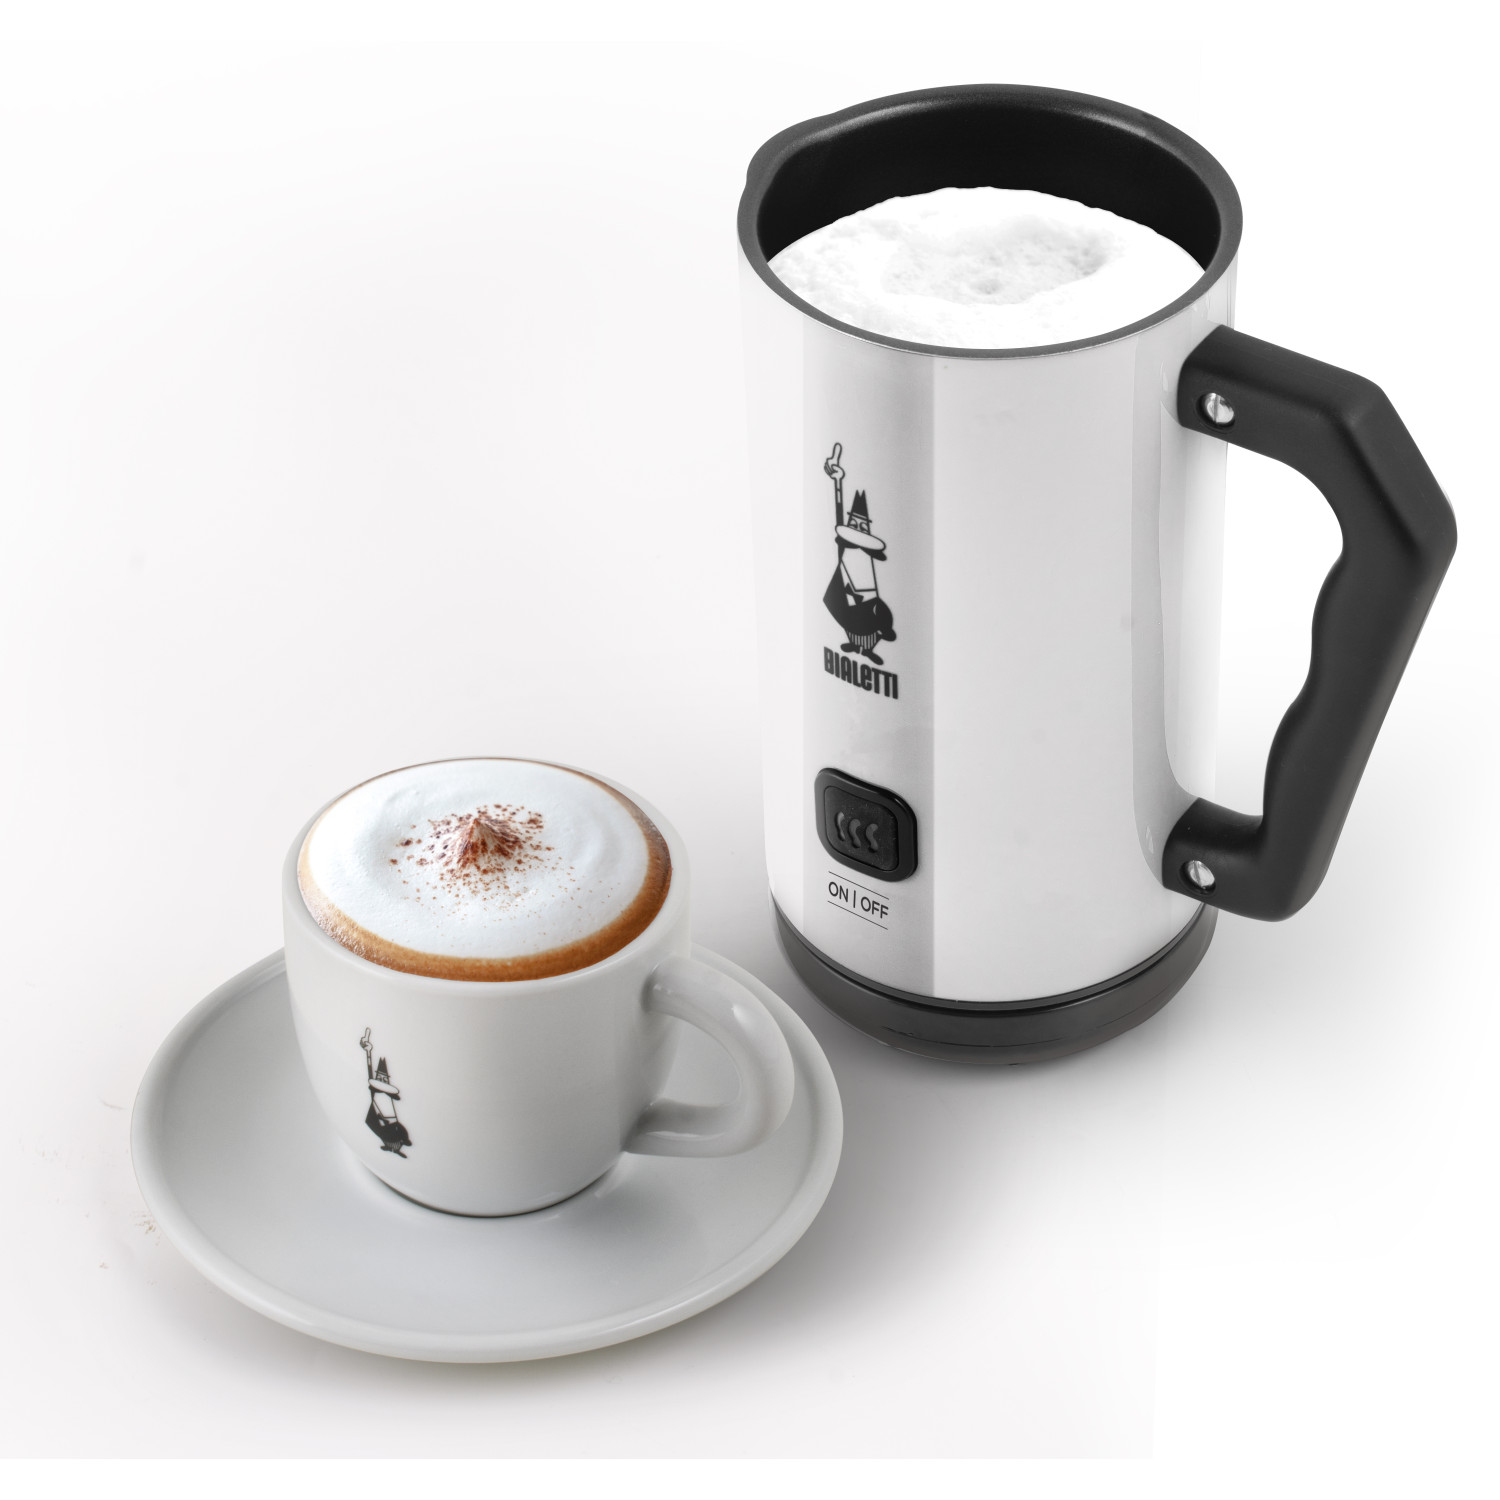 Frother Weiß/Schwarz MK02 Espressokocher BIALETTI Elettric Milk